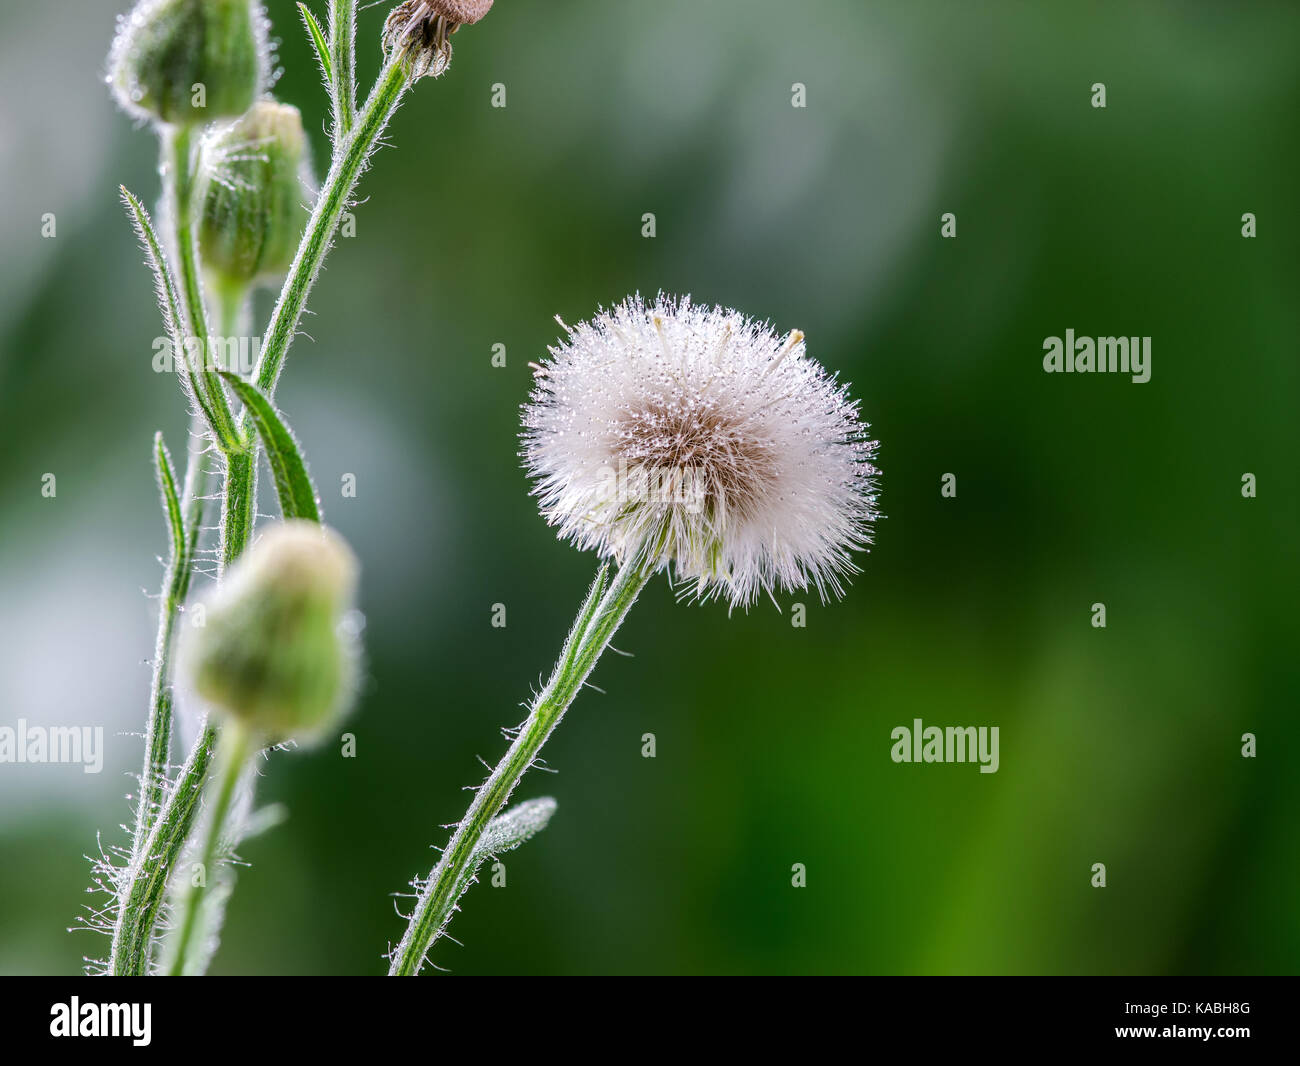 Primer plano de un macro jaramago blanco cabeza floral y semillas, sobre un fondo verde, mostrando muchas gotas de agua de lluvia en la flor, semillas y pétalos Foto de stock